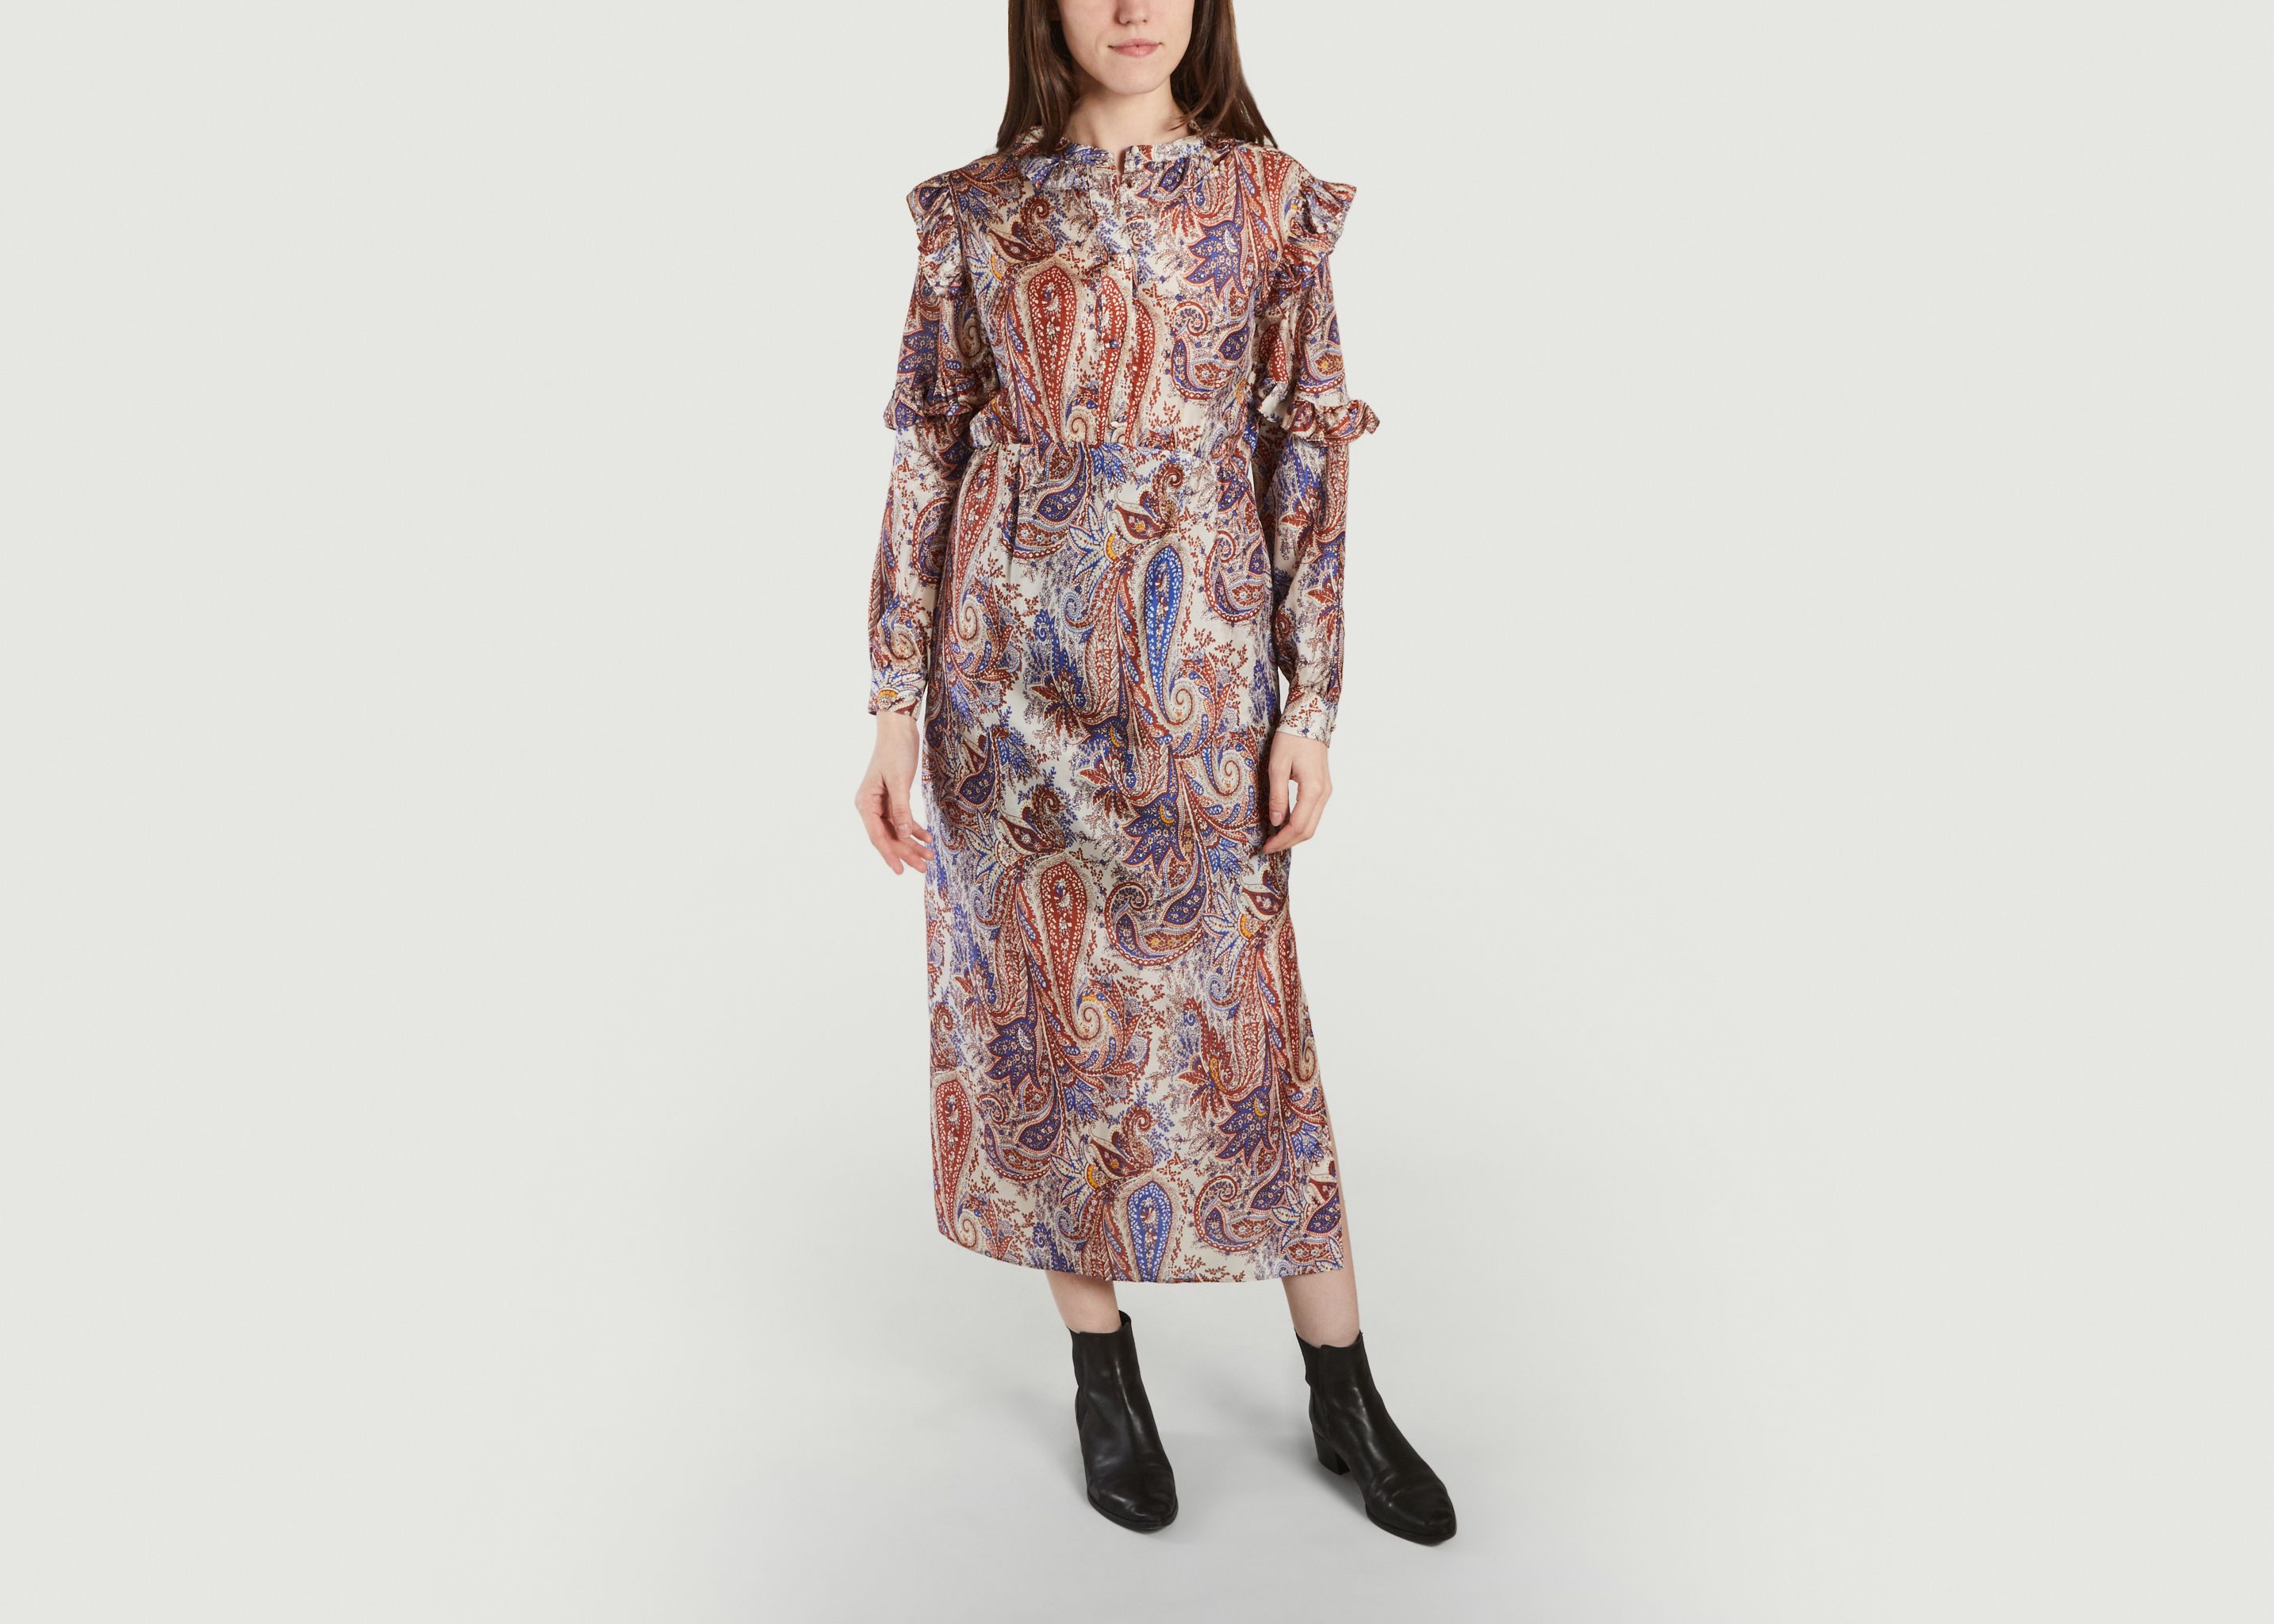 Arlo Paisley dress in Italian silk fabric - Roseanna